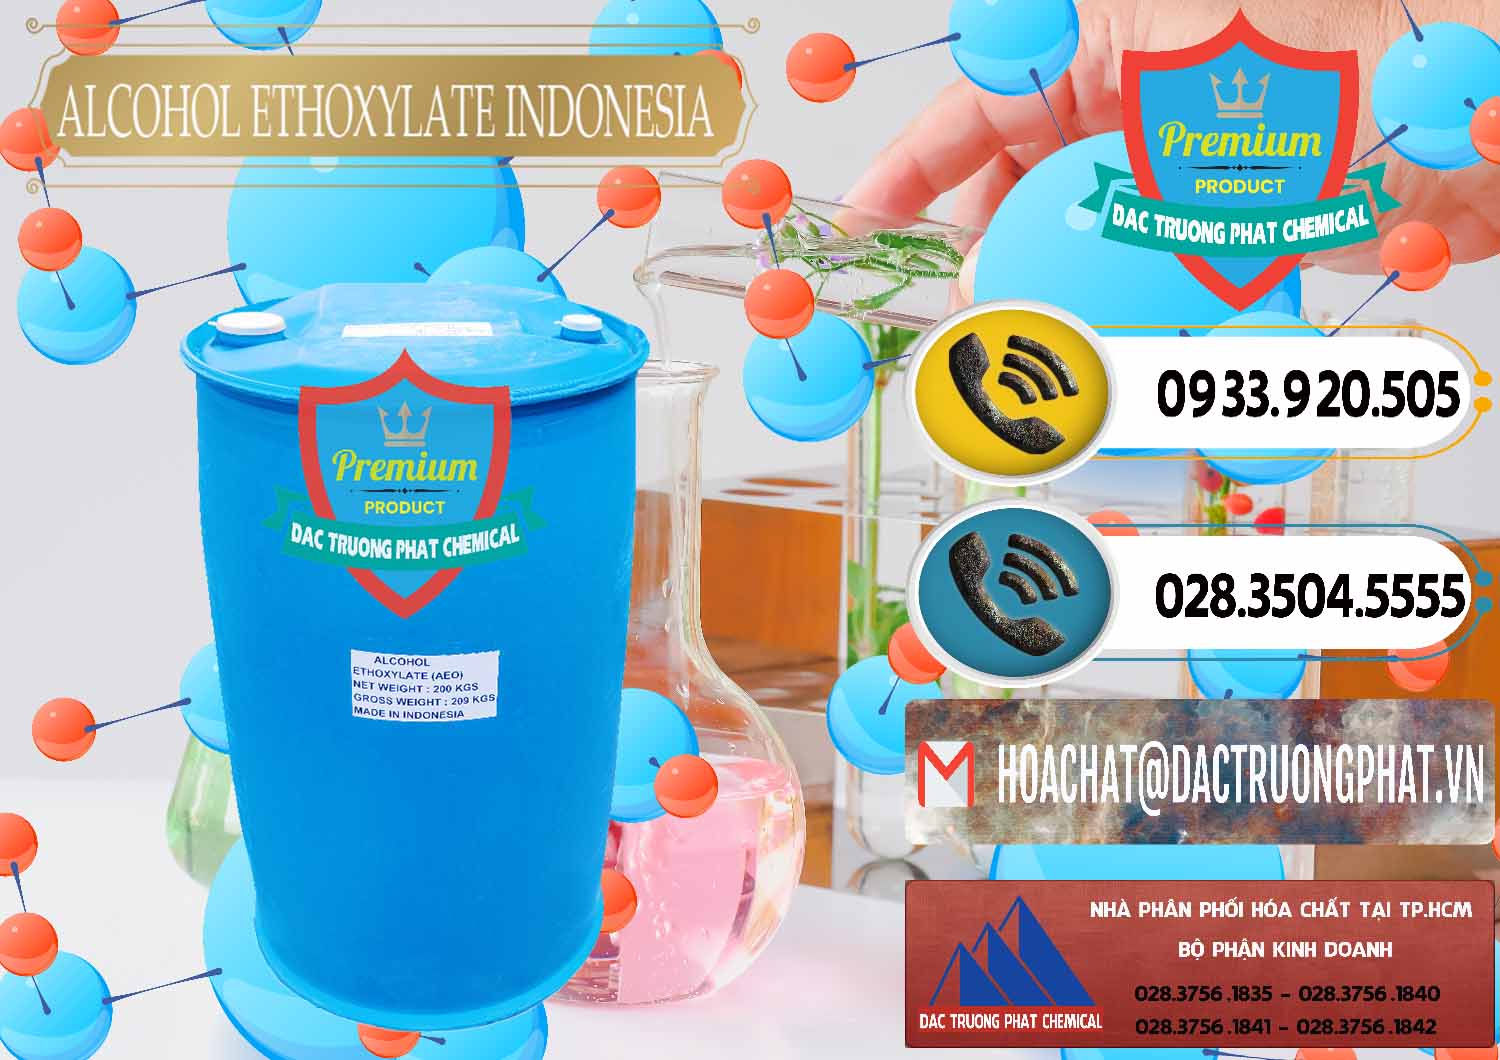 Nơi chuyên kinh doanh - bán Alcohol Ethoxylate Indonesia - 0308 - Chuyên cung cấp & kinh doanh hóa chất tại TP.HCM - hoachatdetnhuom.vn